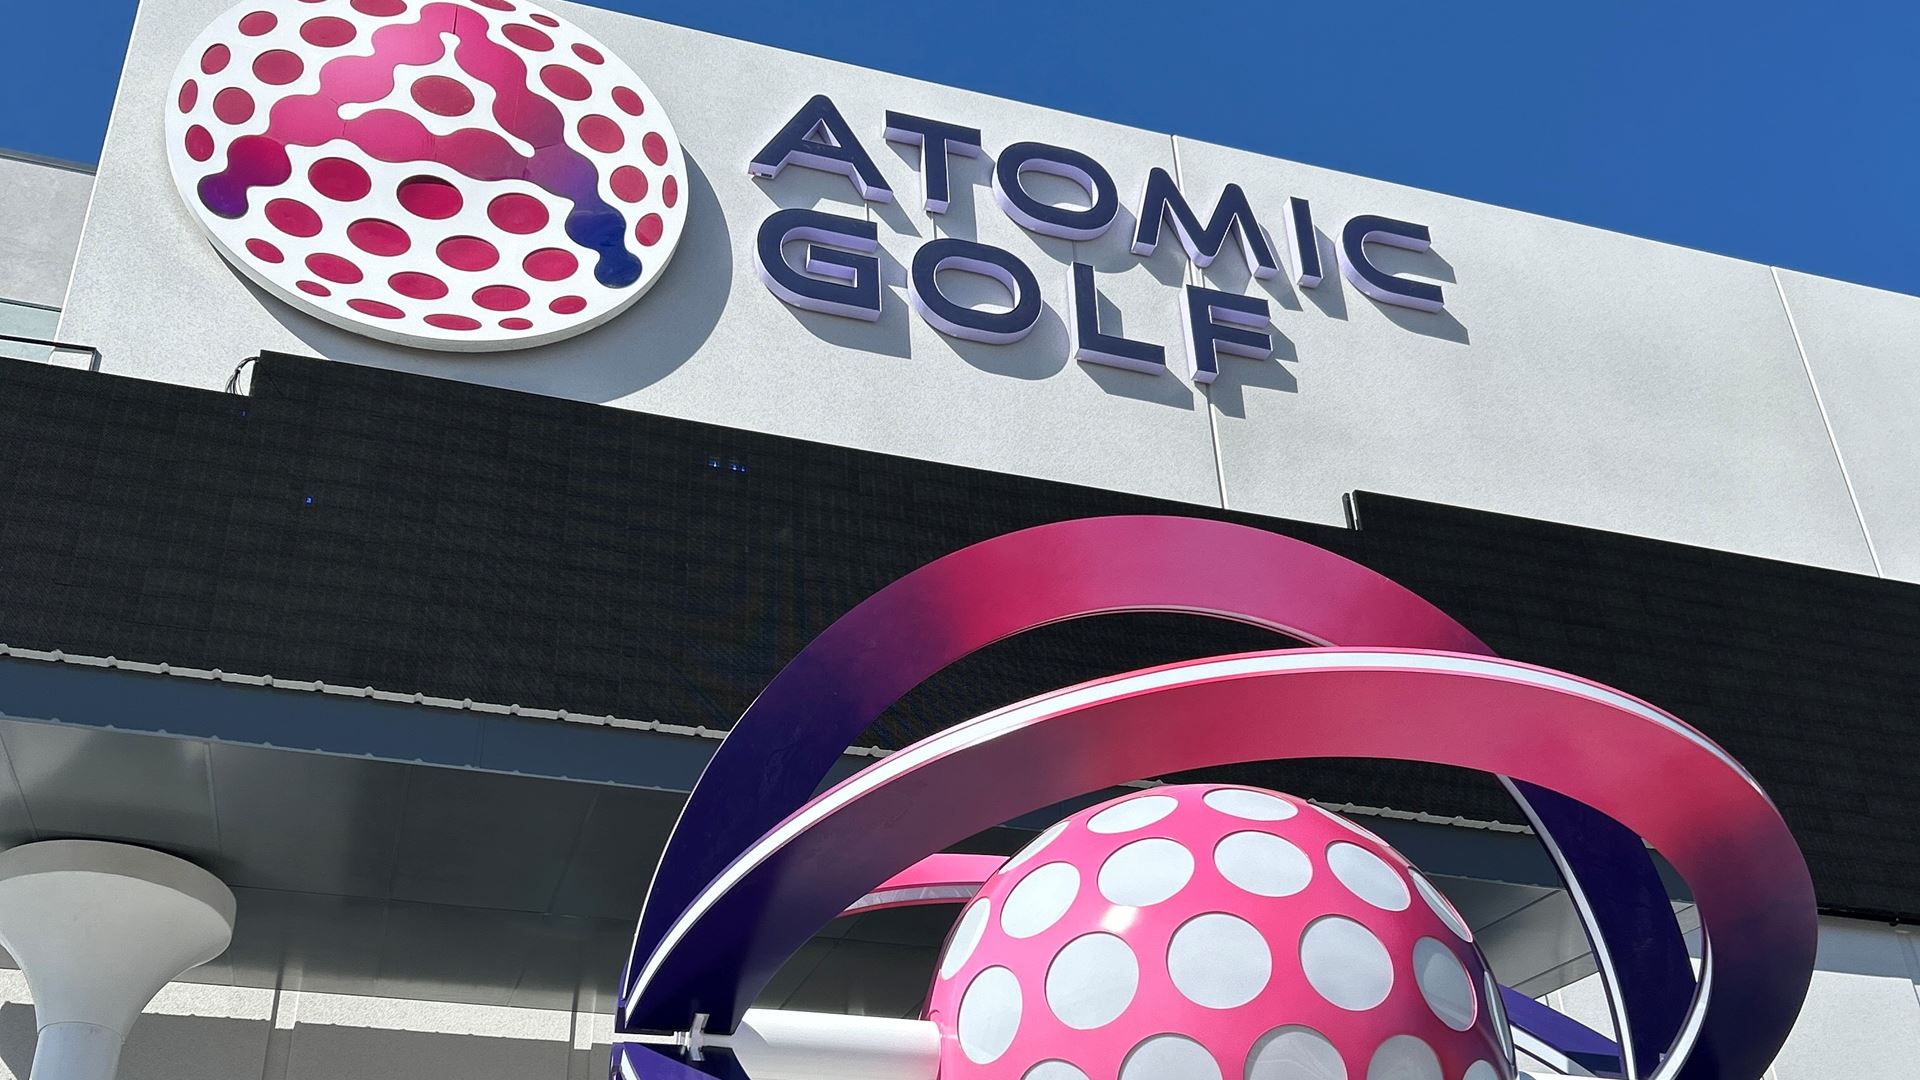 Atomic Golf exterior